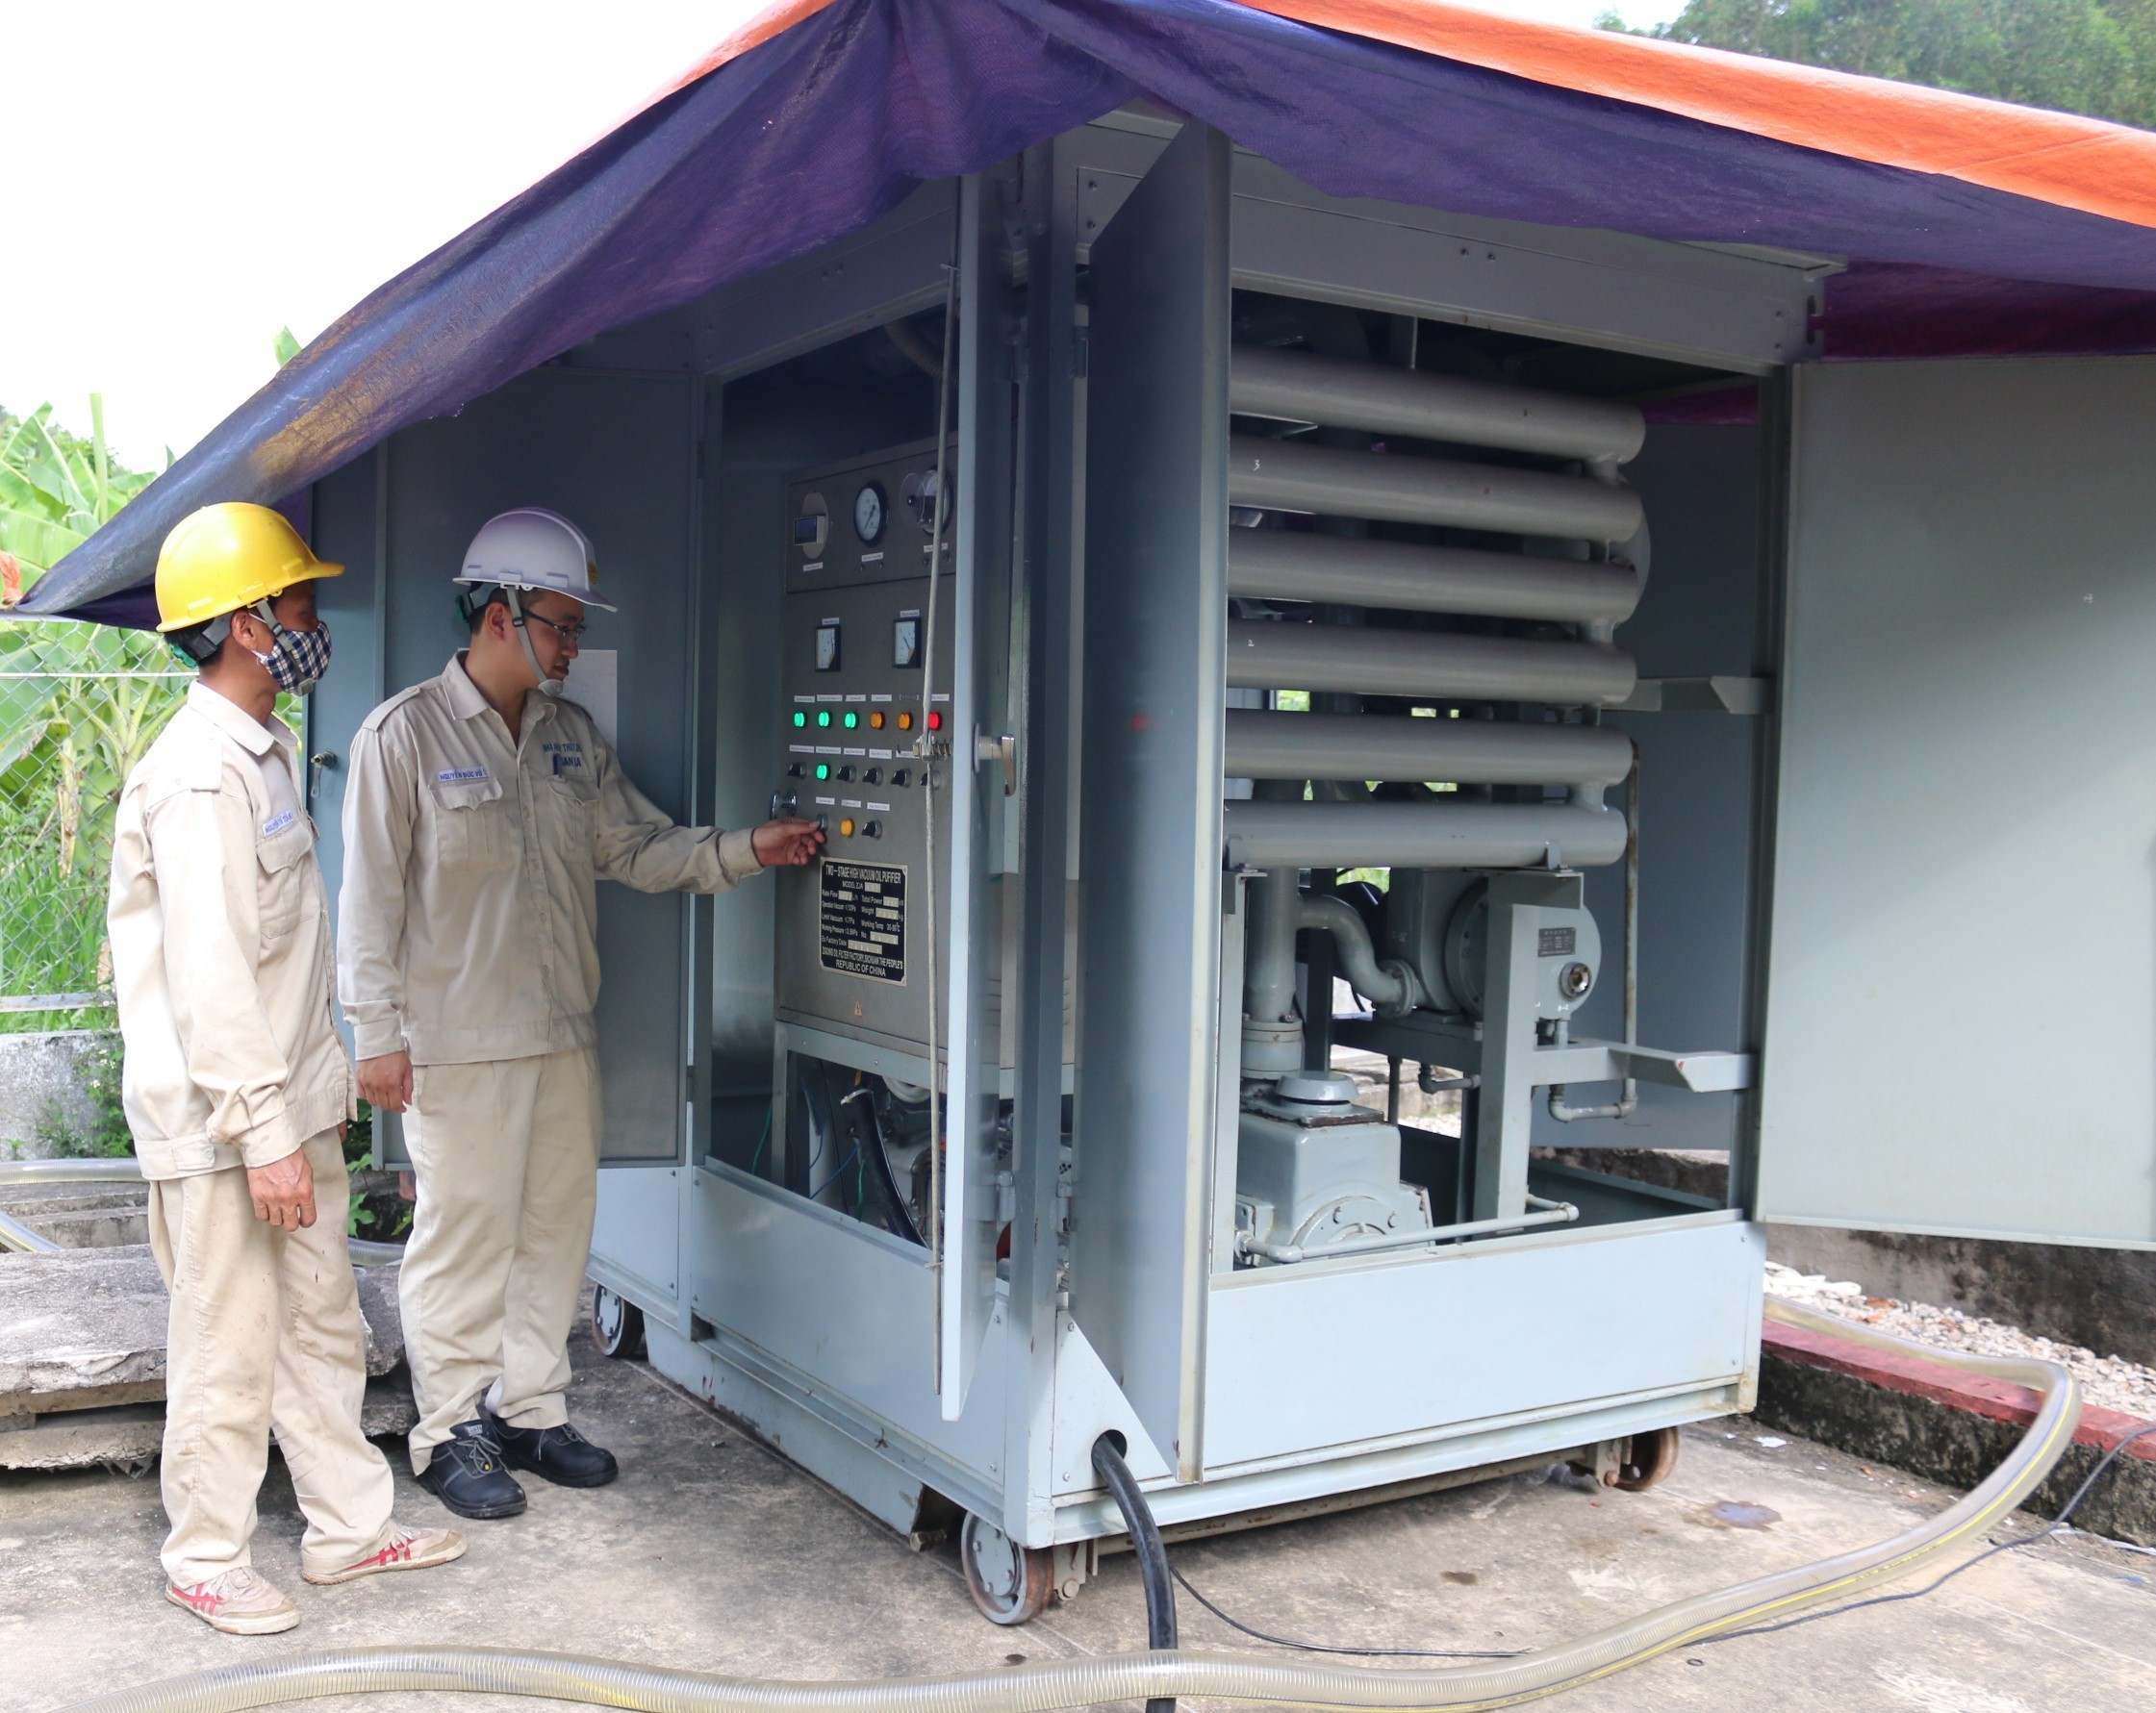 Thực hiện lọc, nạp dầu máy biến áp Nhà máy điện mặt trời Europlast Phú Yên